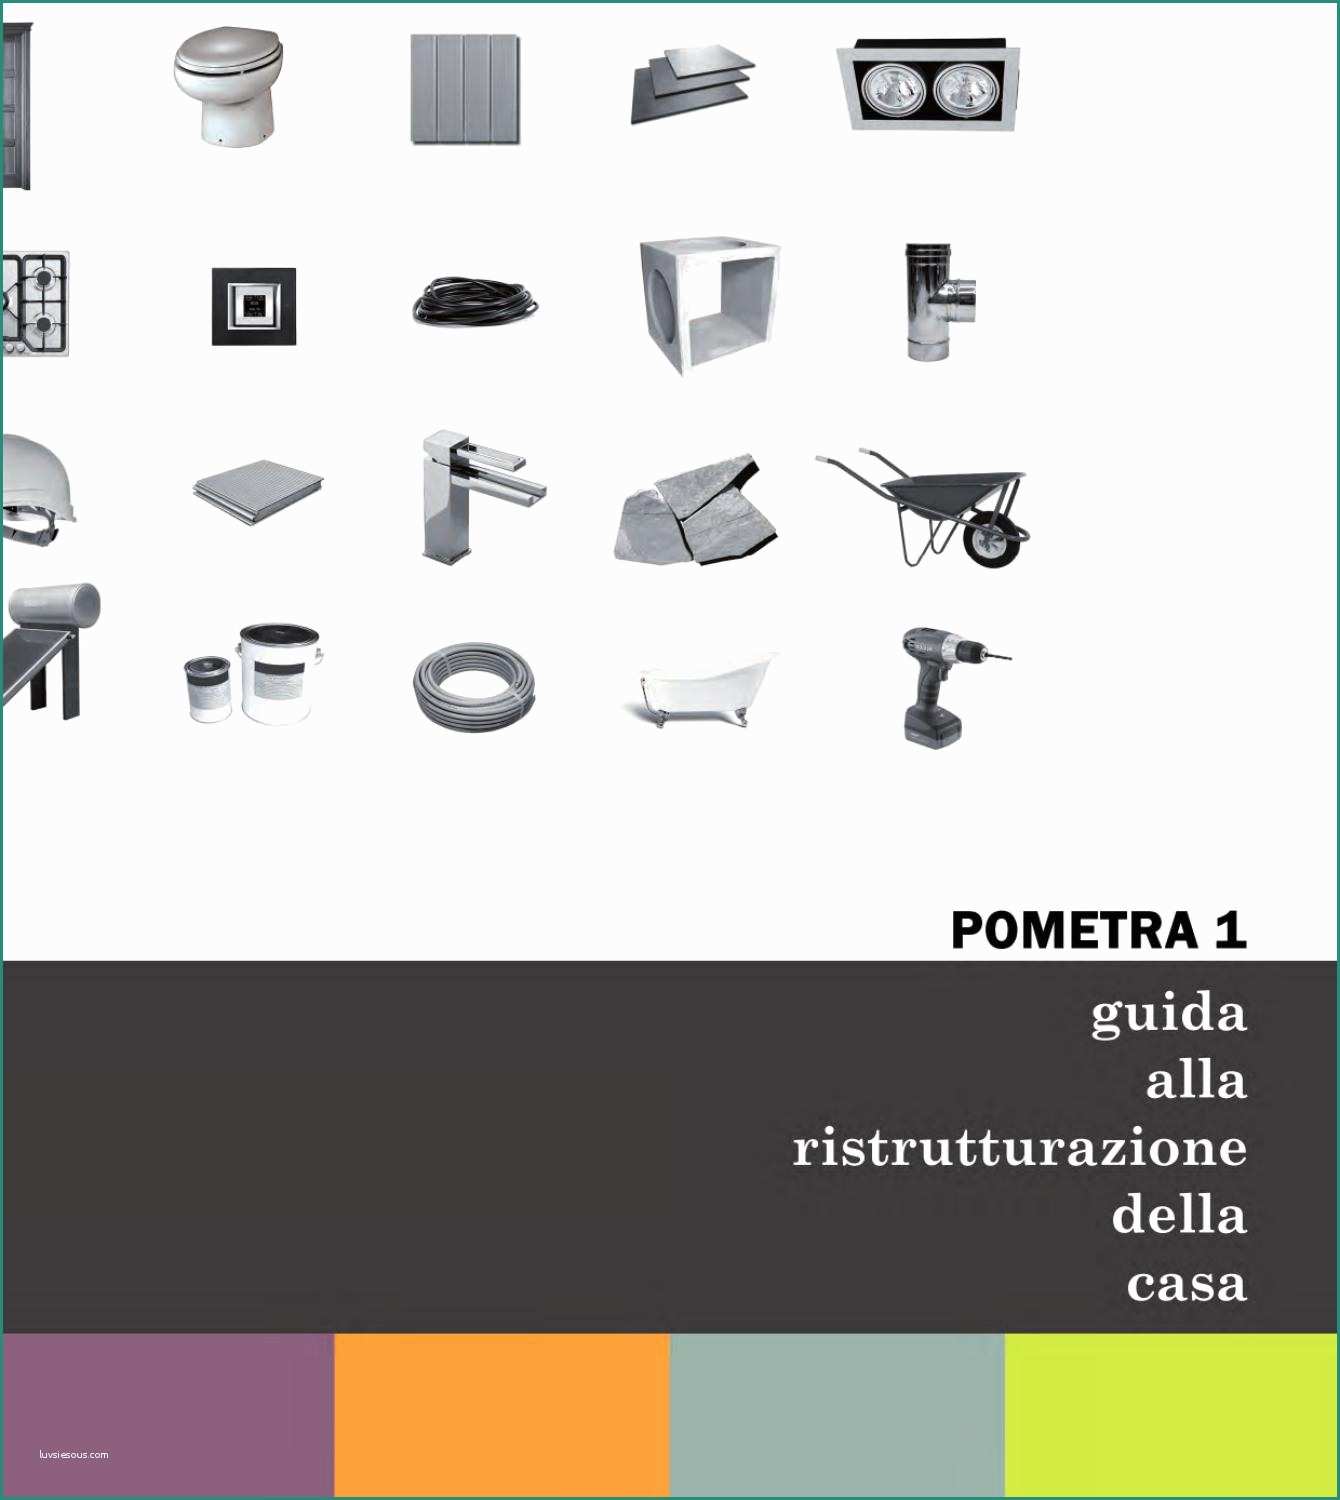 Cornicette Semplici Classe Prima E Guida Alla Ristrutturazione Della Casa by Alessandro Pomilio issuu